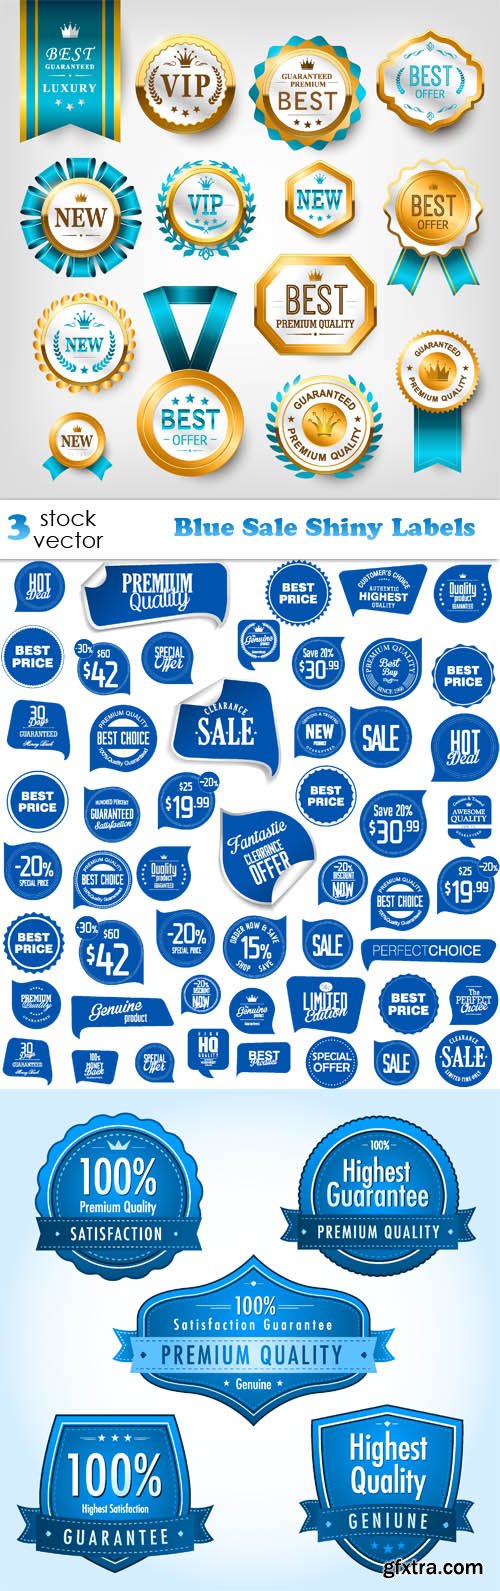 Vectors - Blue Sale Shiny Labels